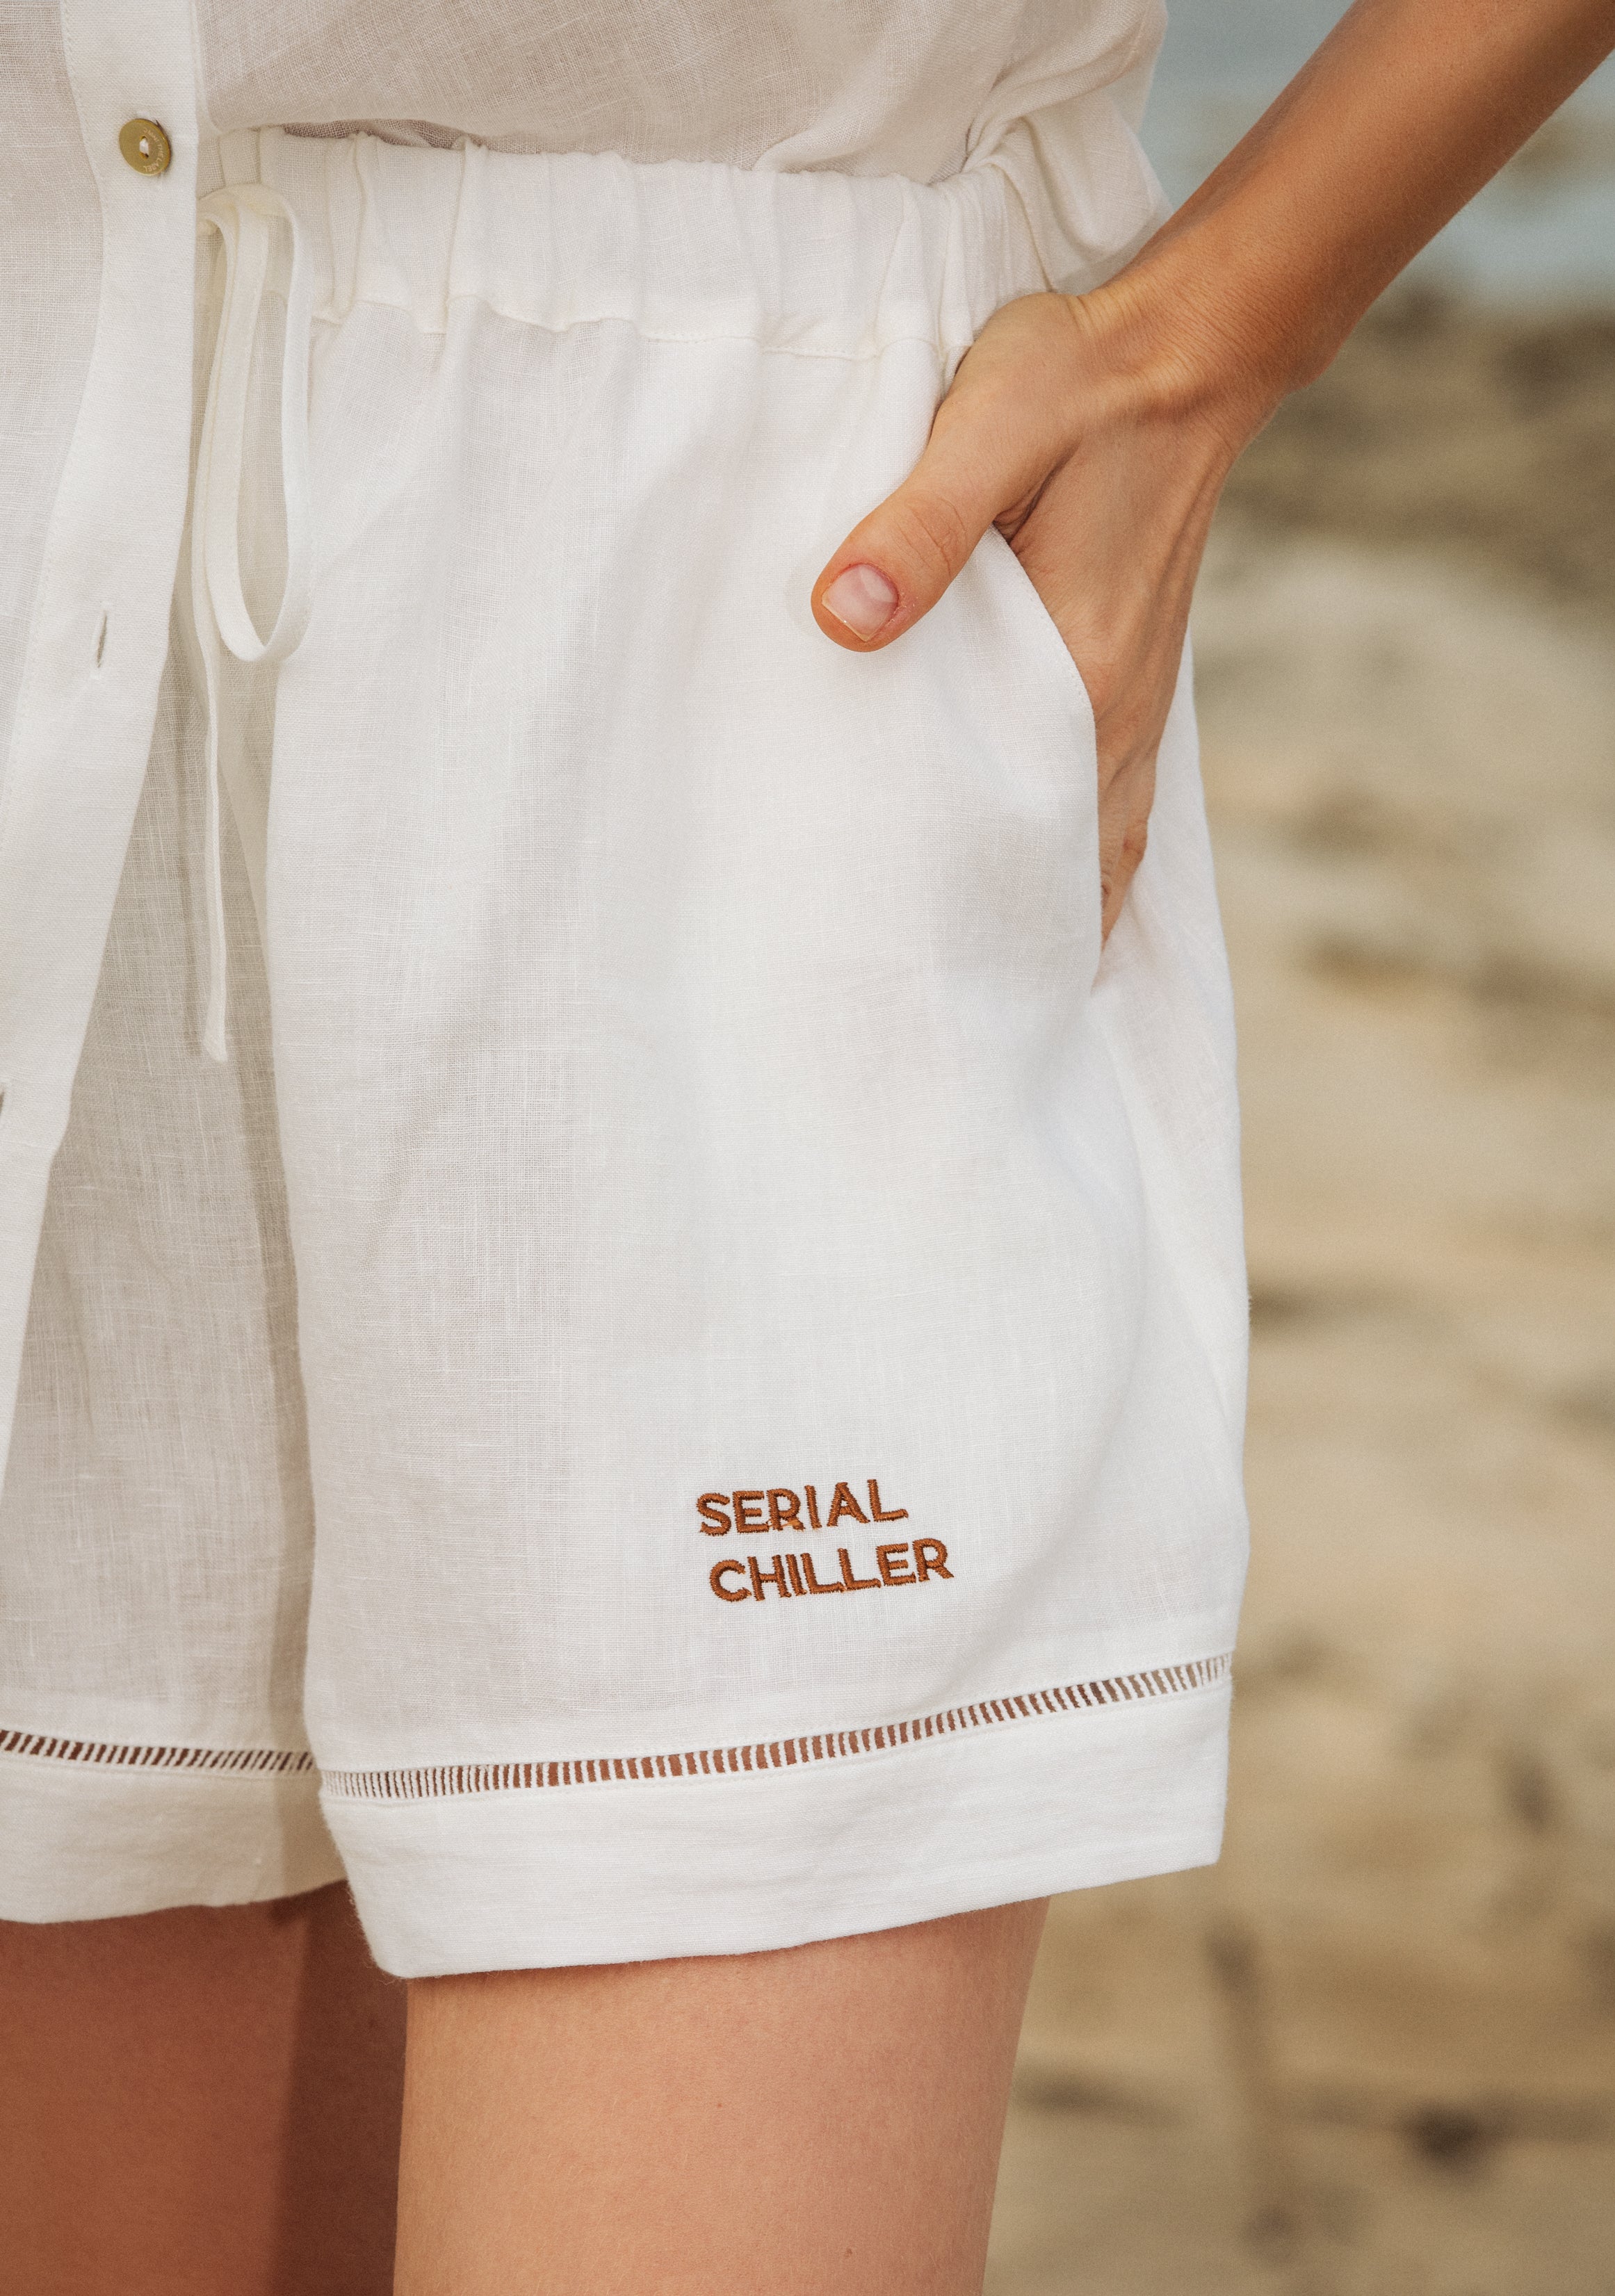 The Serial Chiller linen set